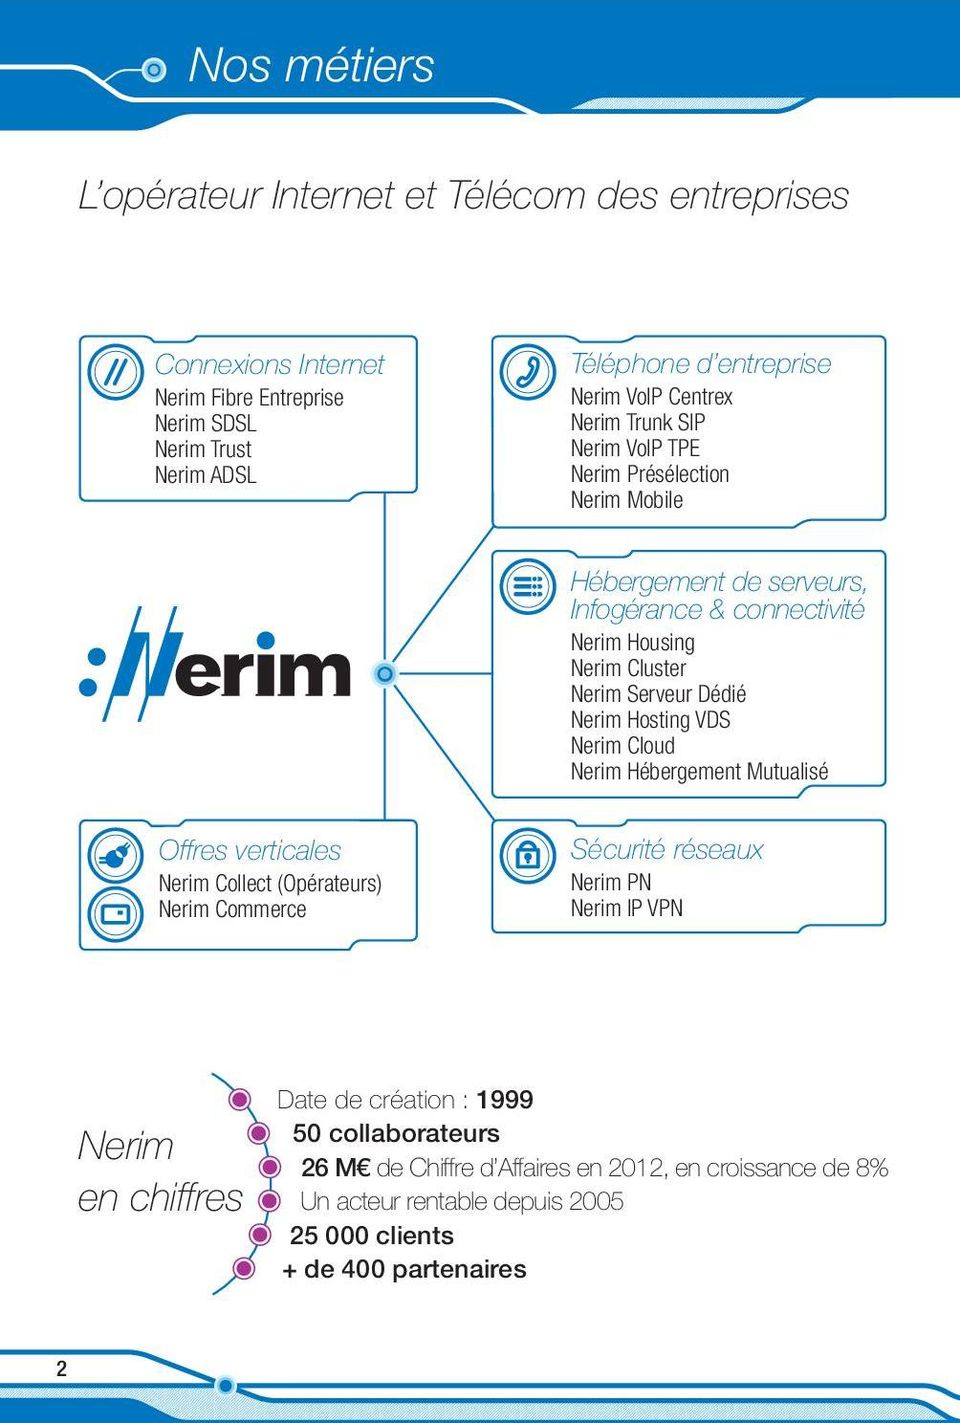 Nerim Hosting VDS Nerim Cloud Nerim Hébergement Mutualisé Offres verticales Nerim Collect (Opérateurs) Nerim Commerce Sécurité réseaux Nerim PN Nerim IP VPN Nerim en